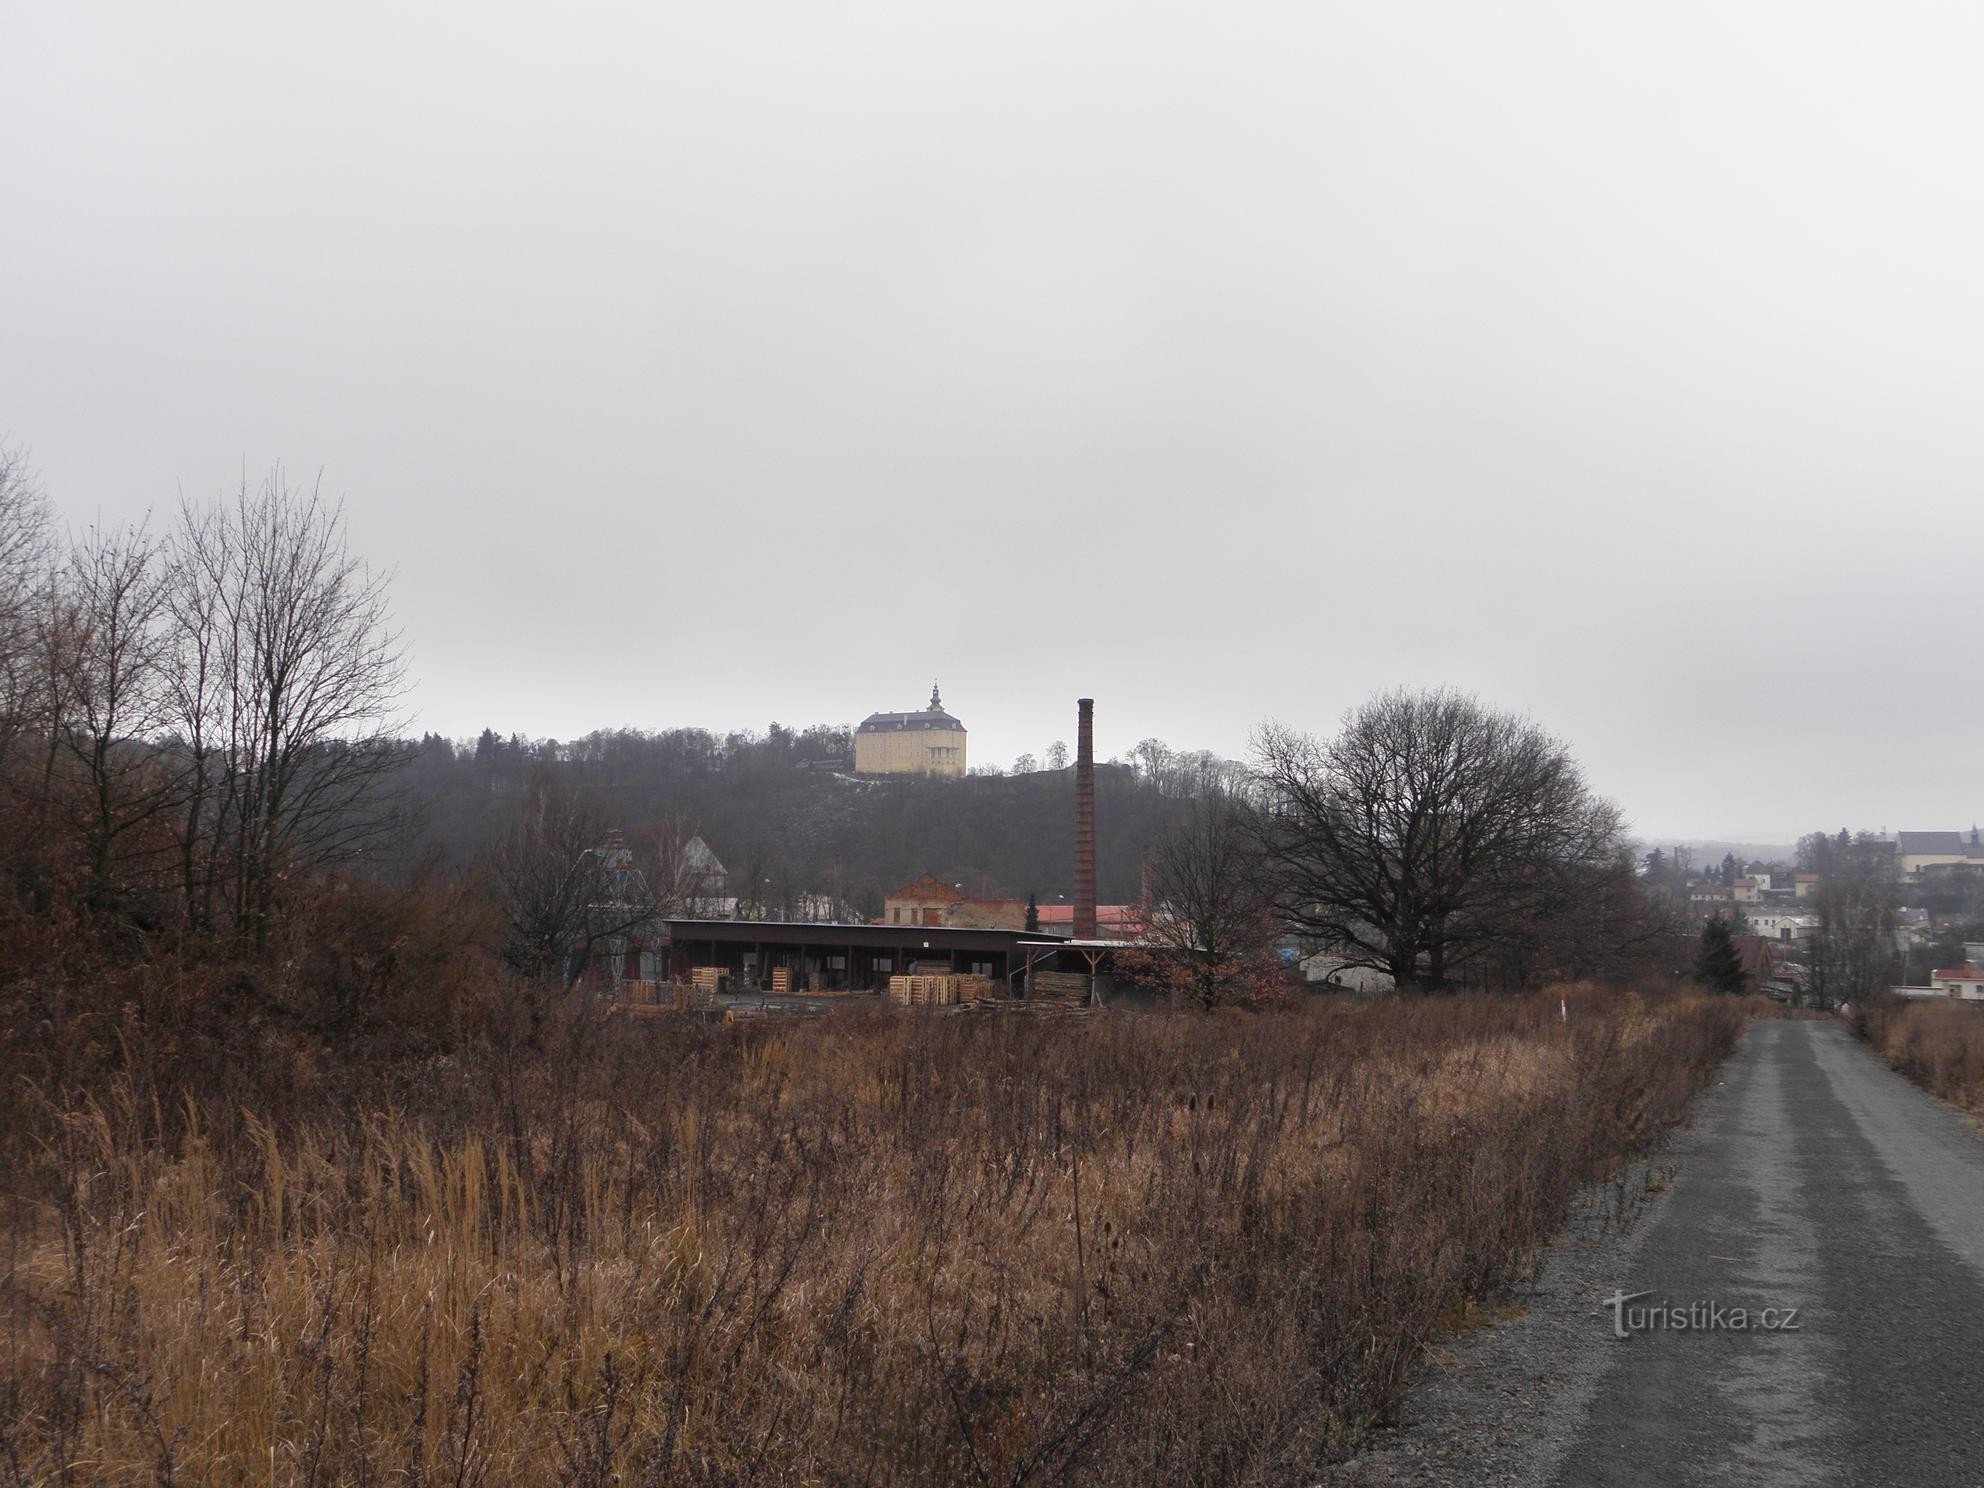 Vista del castillo de Fulnec - 1.1.2012